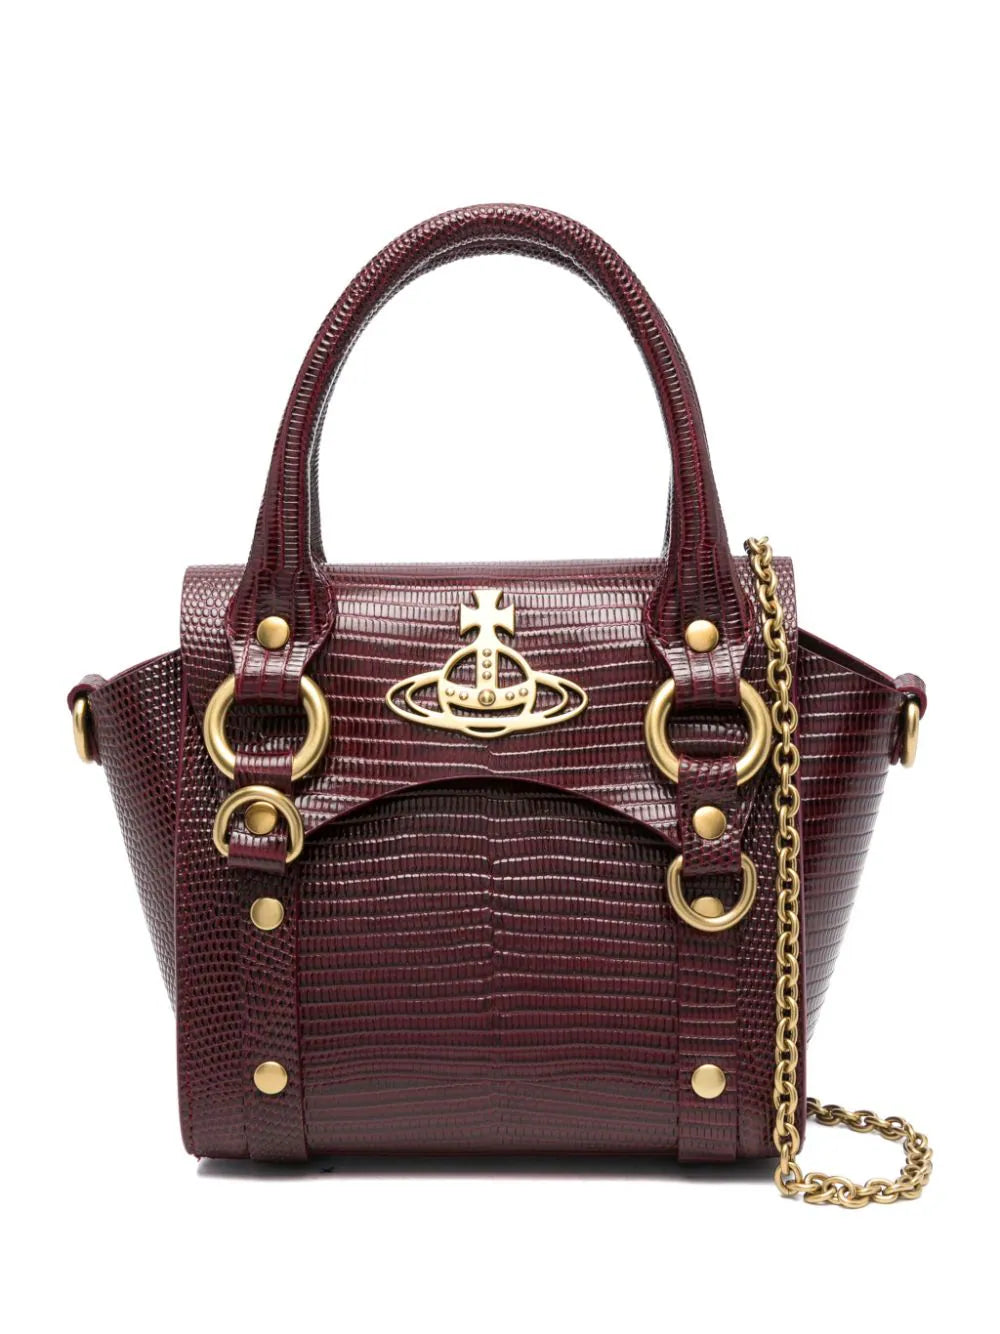 Vivienne Westwood Betty Mini Handbag with Chain